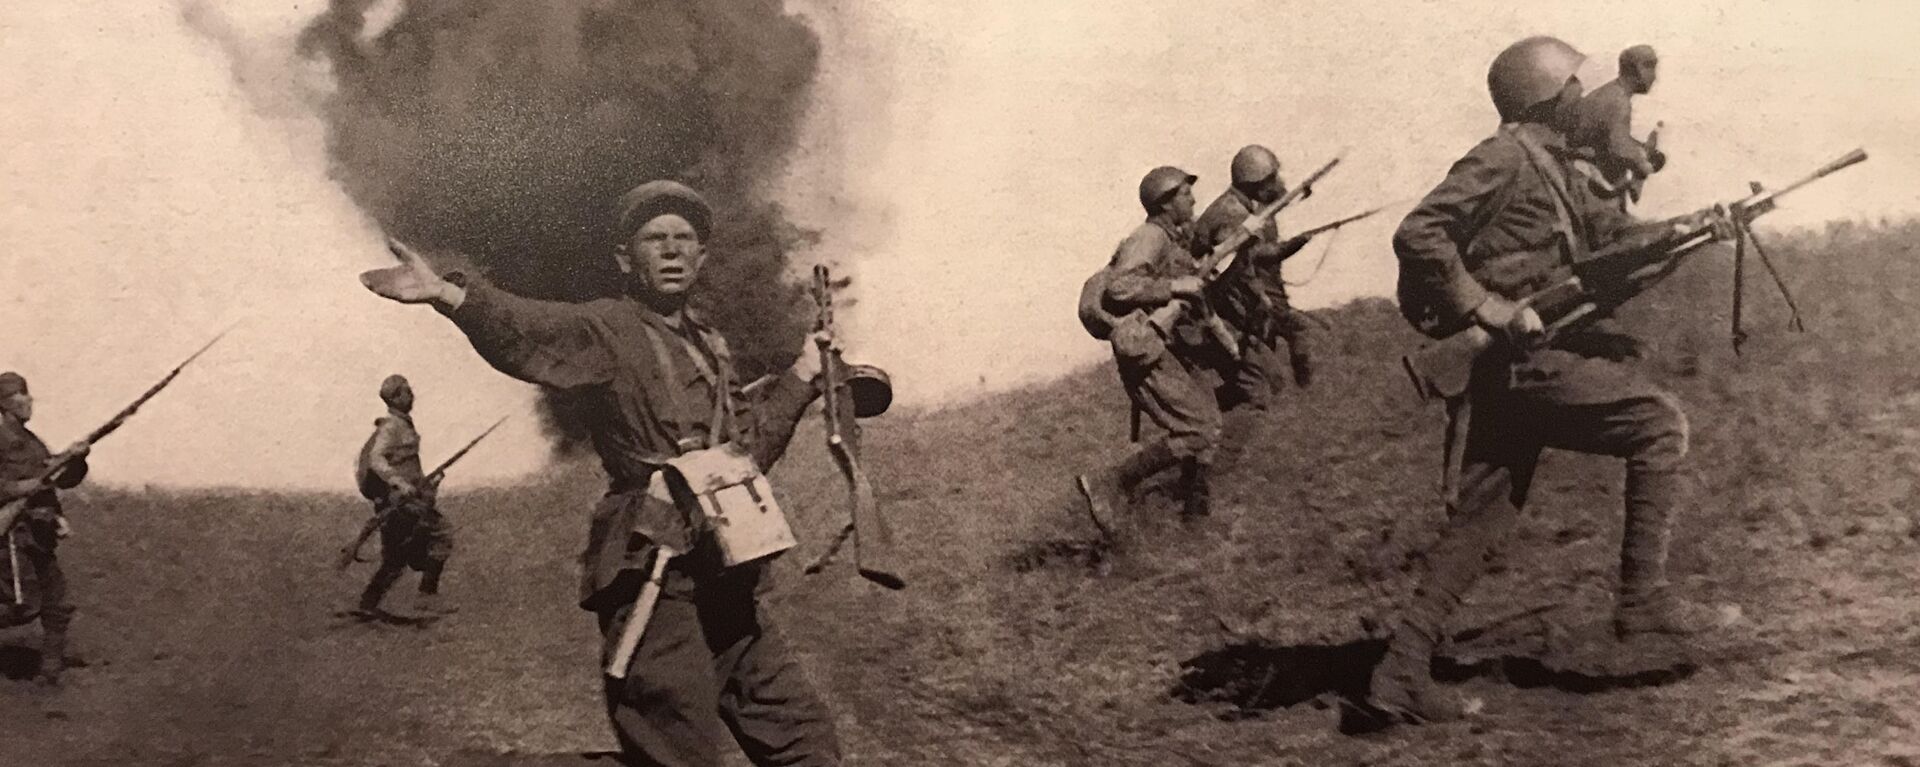 Borbena dejstva Crvene armije na prilazima Staljingradu  - Sputnik Srbija, 1920, 09.12.2021